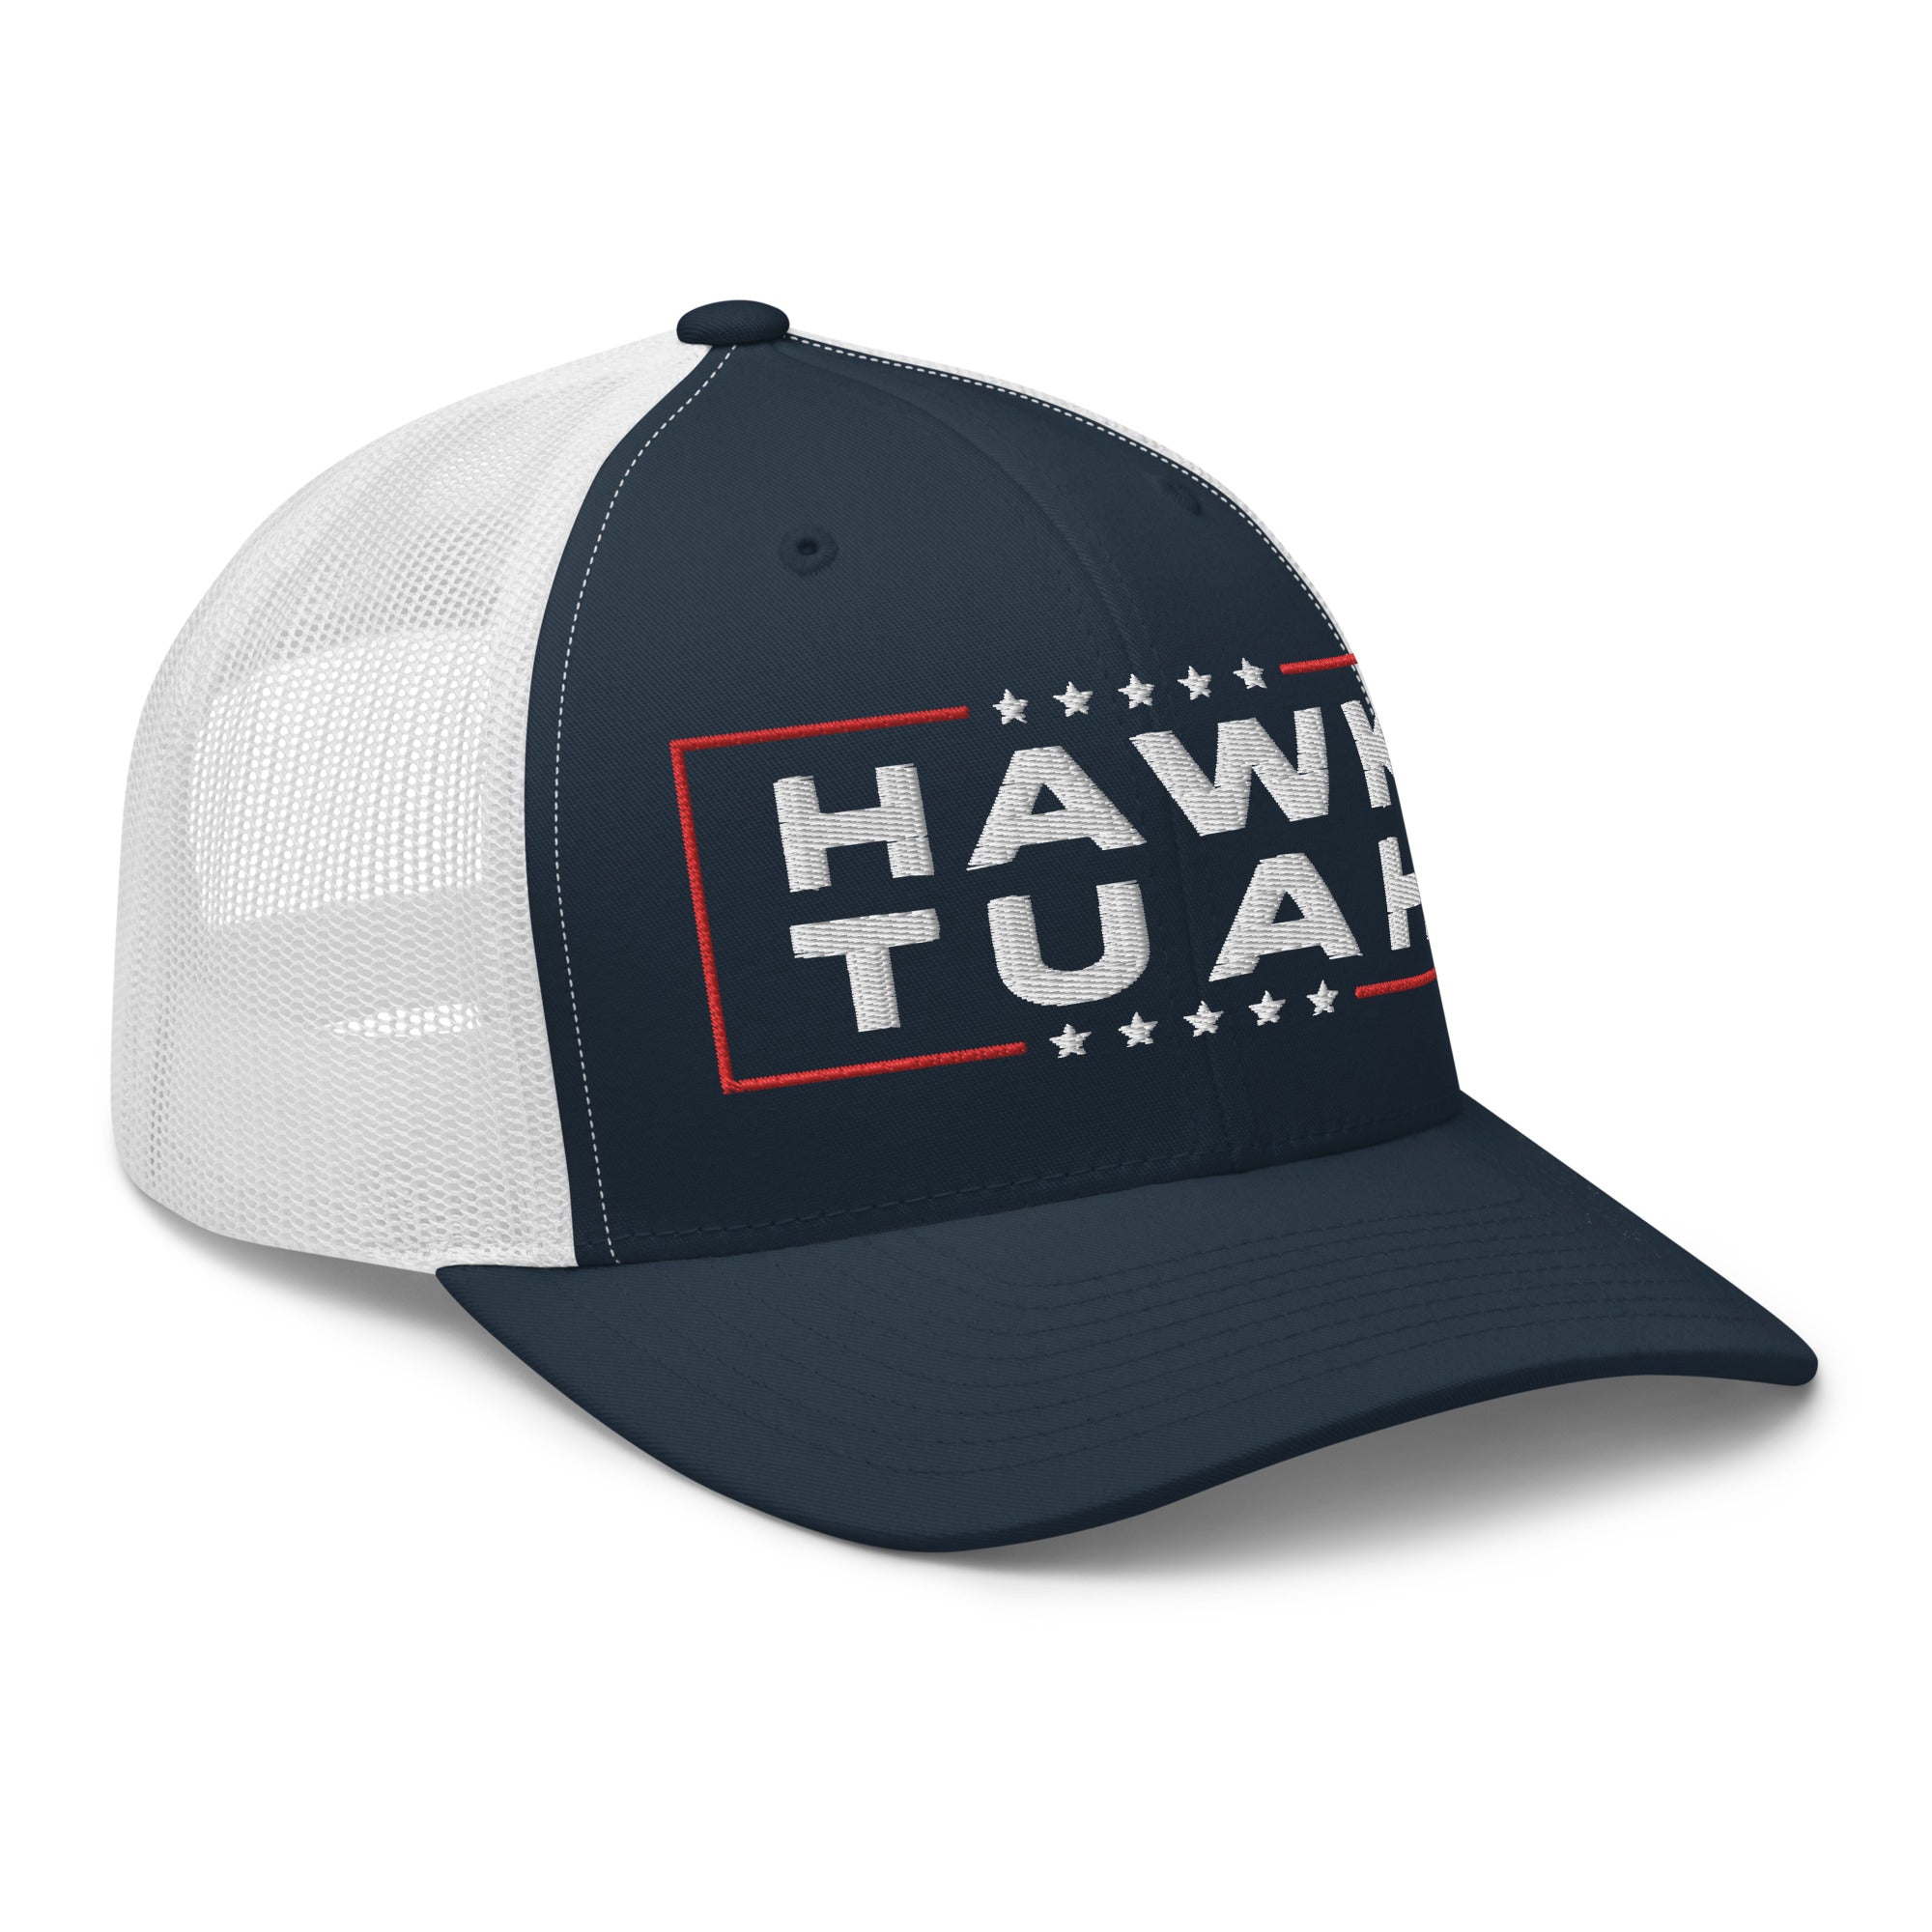 Hawk Tuah Trucker Cap